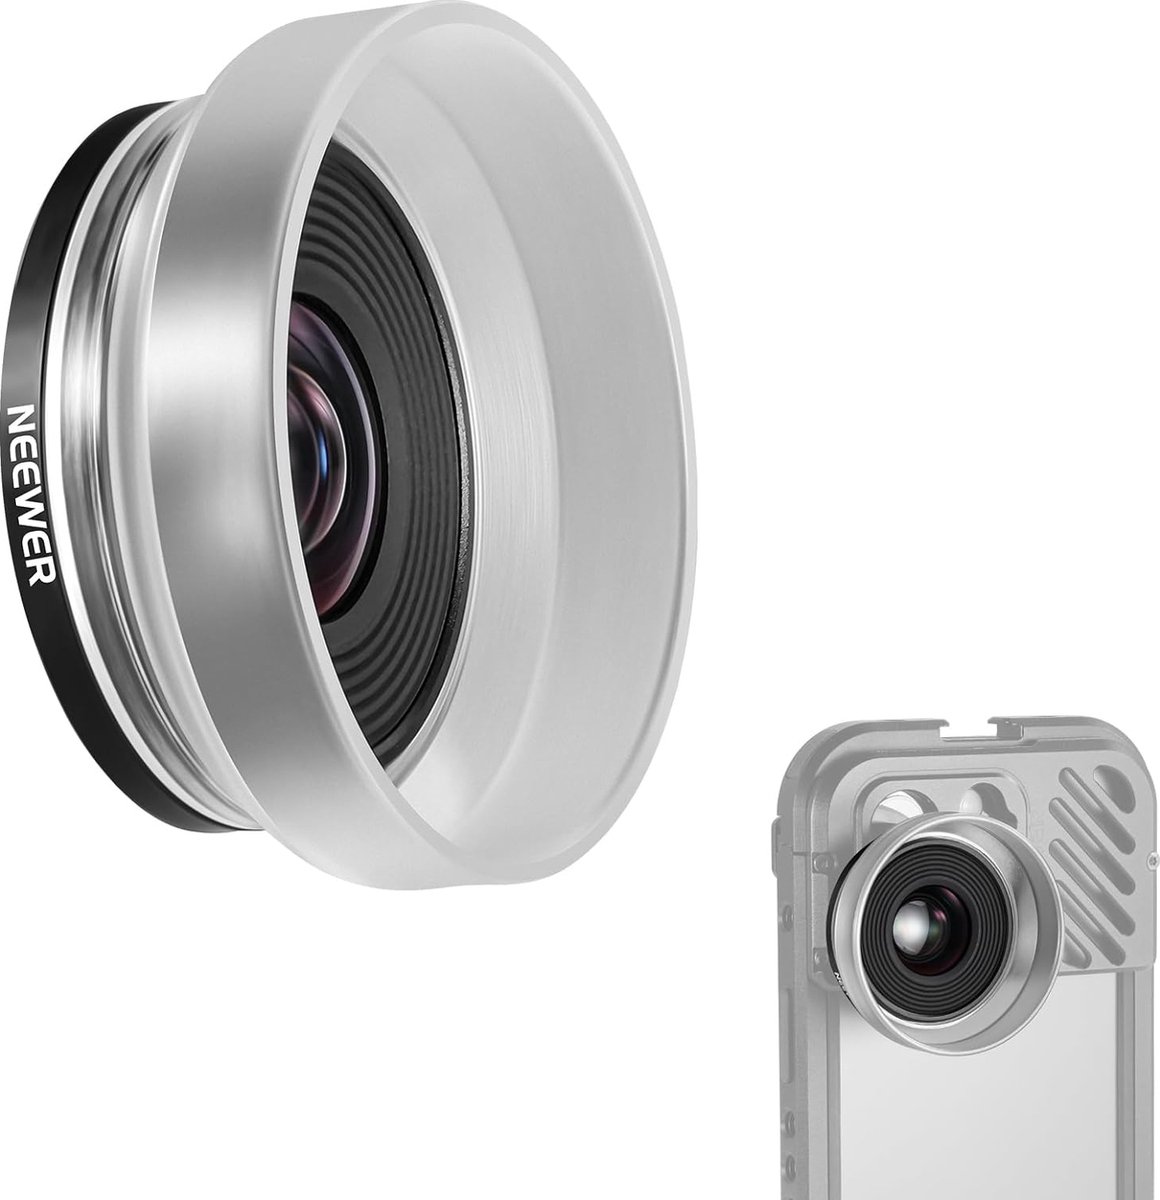 Neewer® - 10x HD Macro Lens met Afneembare Diffuser Cover - Compatibel met iPhone, Samsung, Mobiele Telefoon, Cage, Backplane met 17mm Lensdraad - Geschikt voor SmallRig, Sandmarc, LS-28